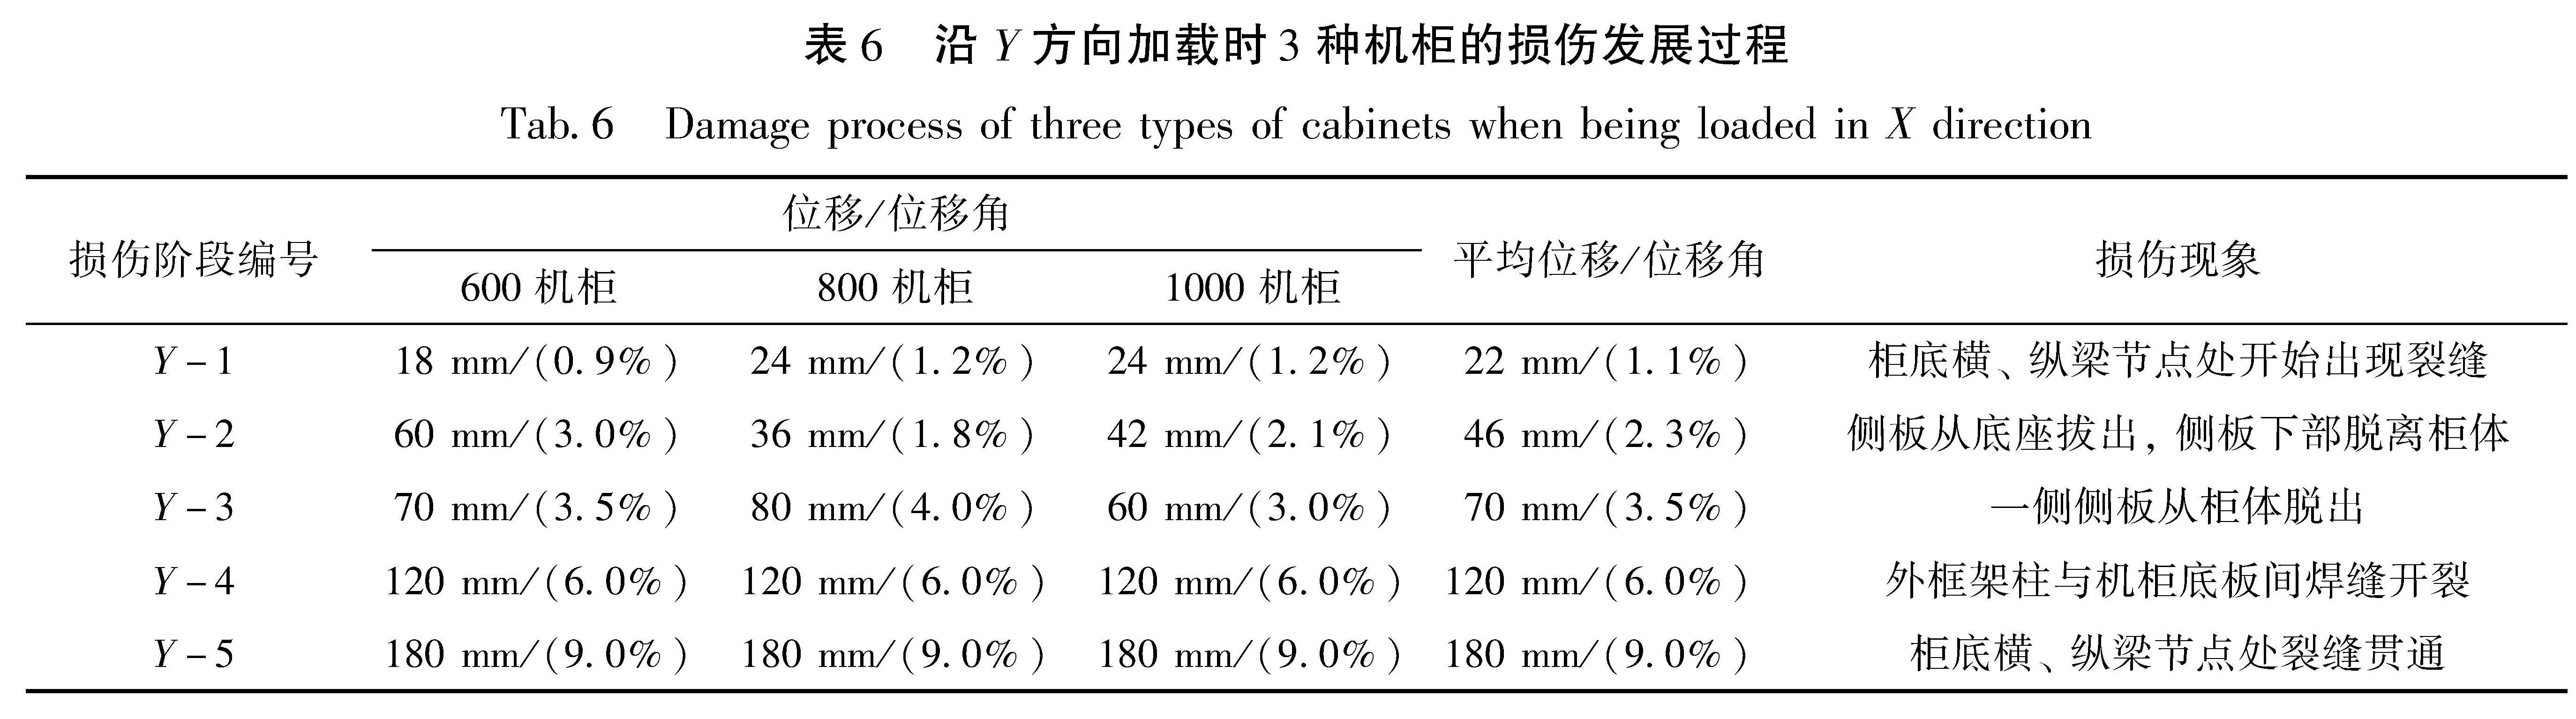 表6 沿Y方向加载时3种机柜的损伤发展过程<br/>Tab.6 Damage process of three types of cabinets when being loaded in X direction